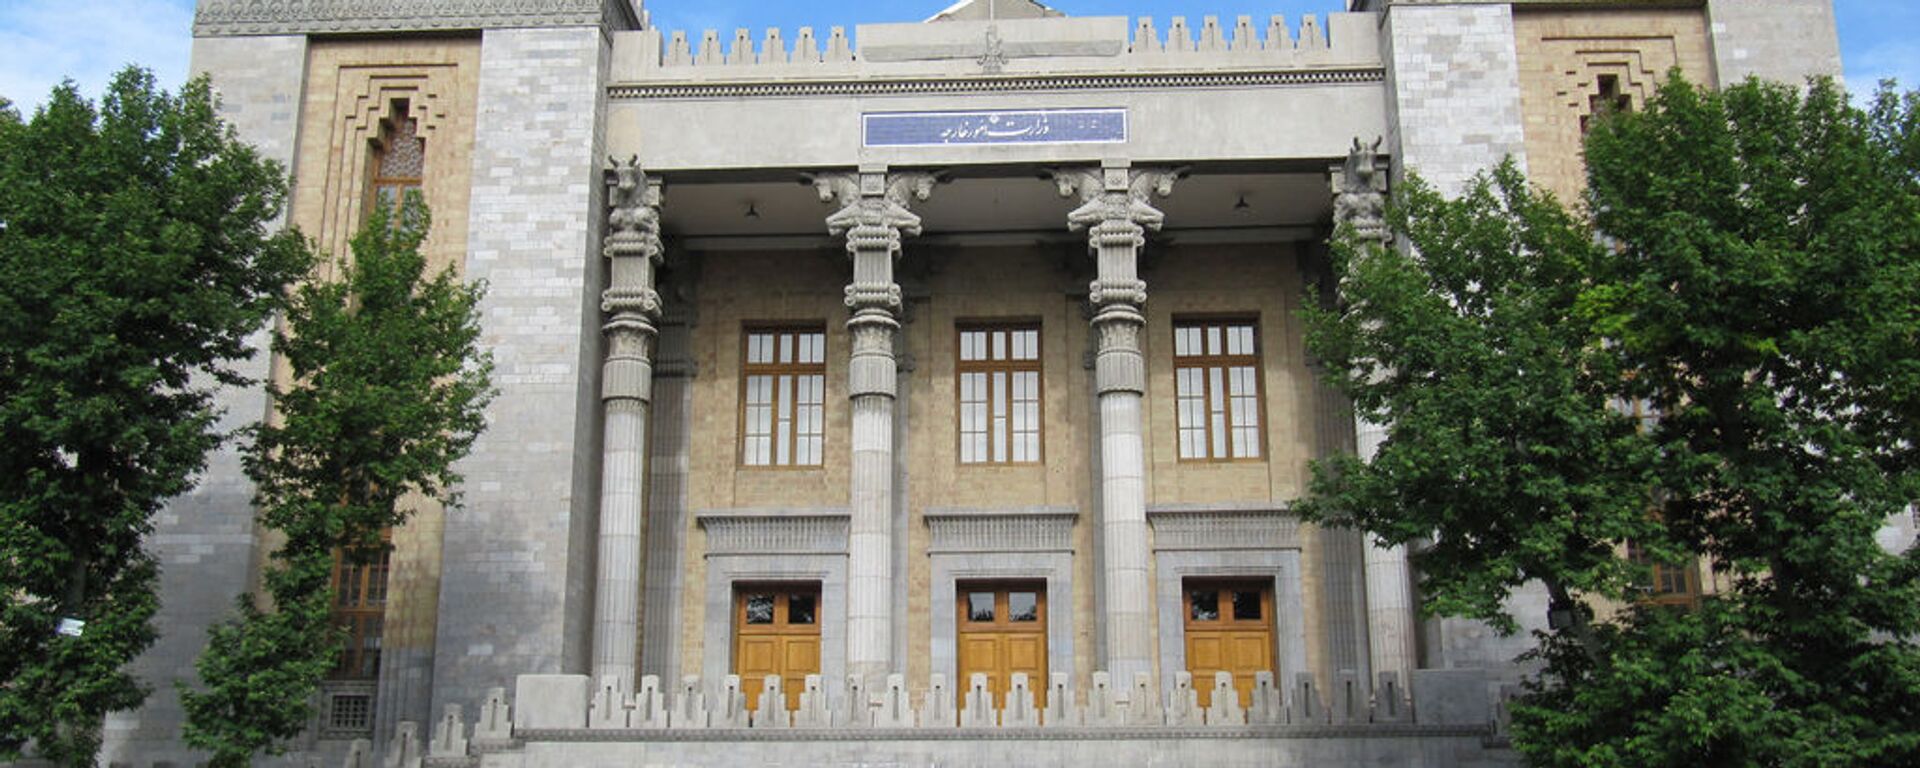 Здание МИД Исламской Республики Иран - Sputnik Армения, 1920, 25.02.2021